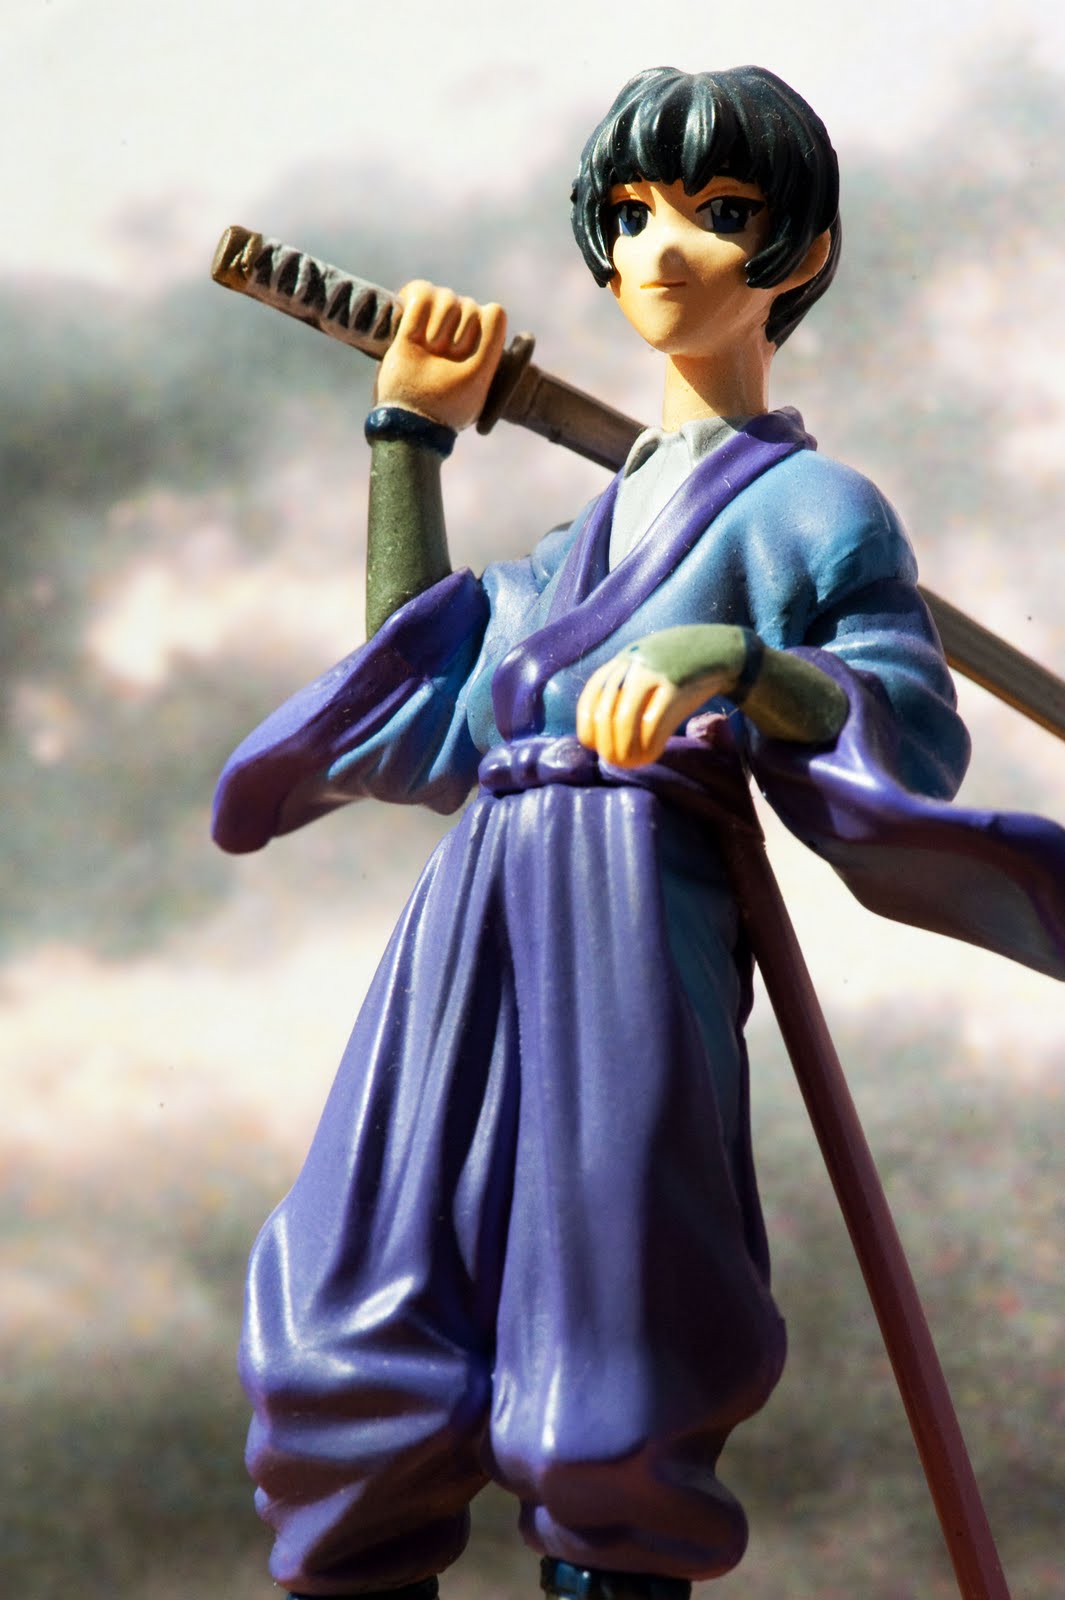 Toy Construct: Sojiro from Rurouni Kenshin